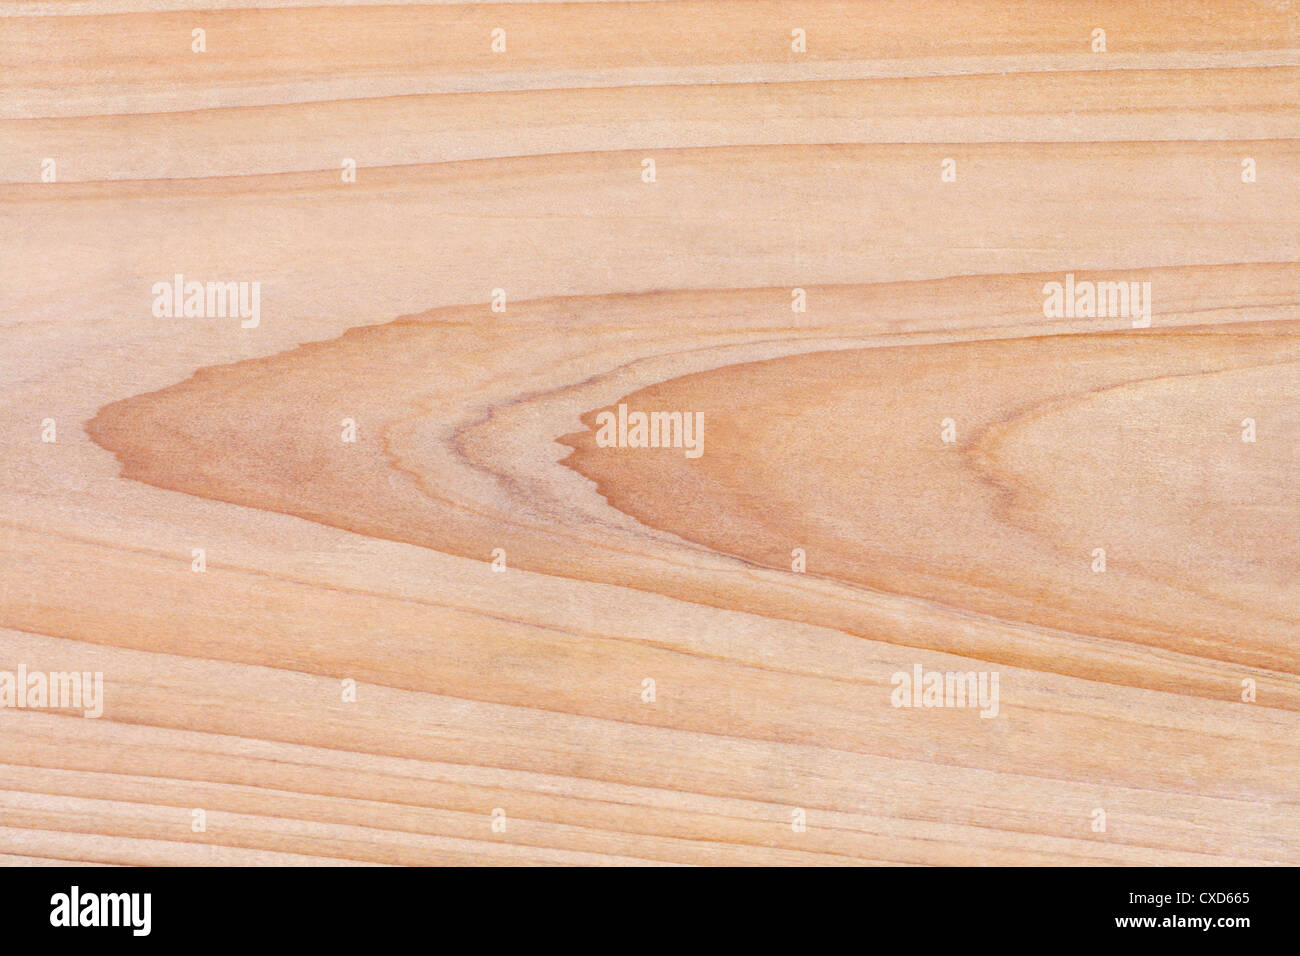 fir wood texture Stock Photo